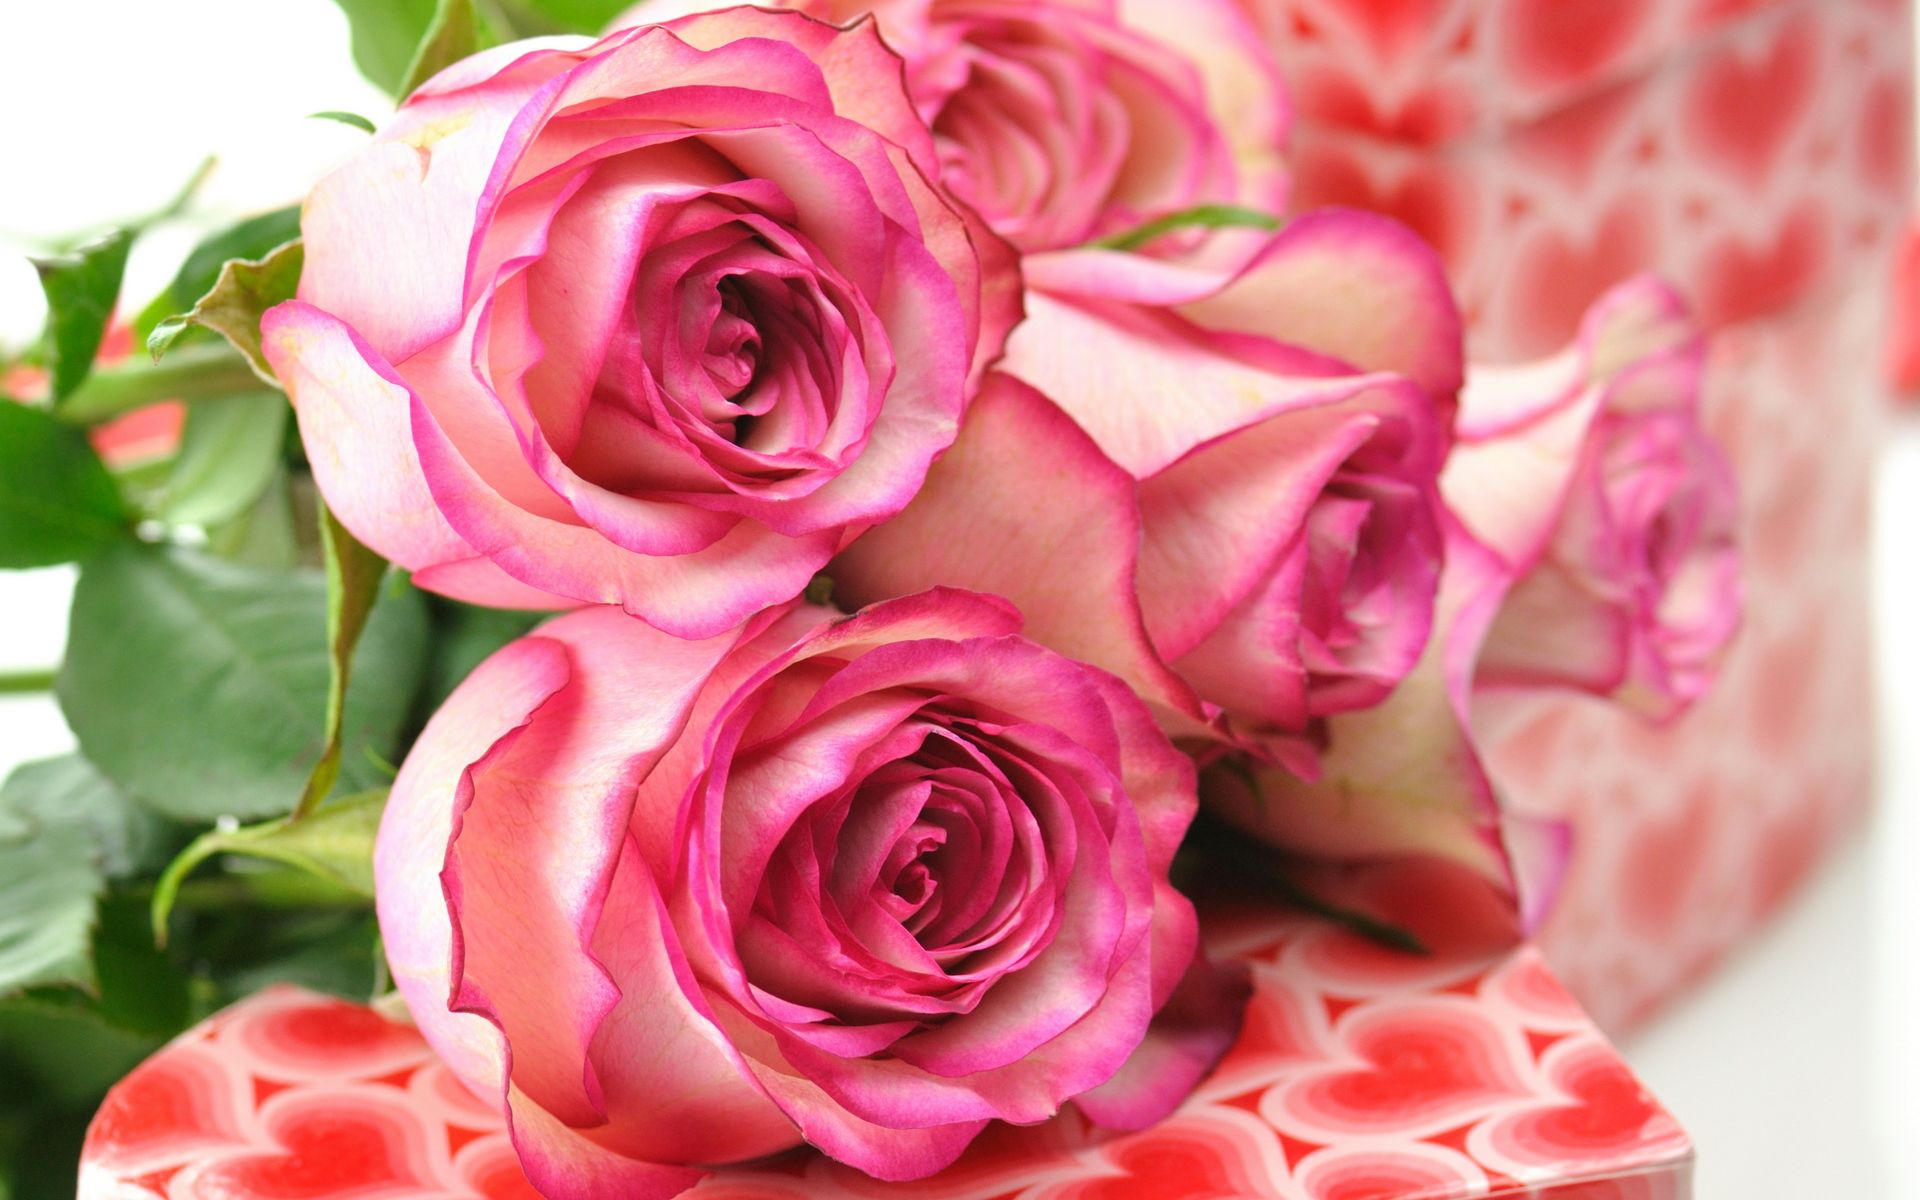 rosentapete hd,blume,rose,gartenrosen,blühende pflanze,rosa